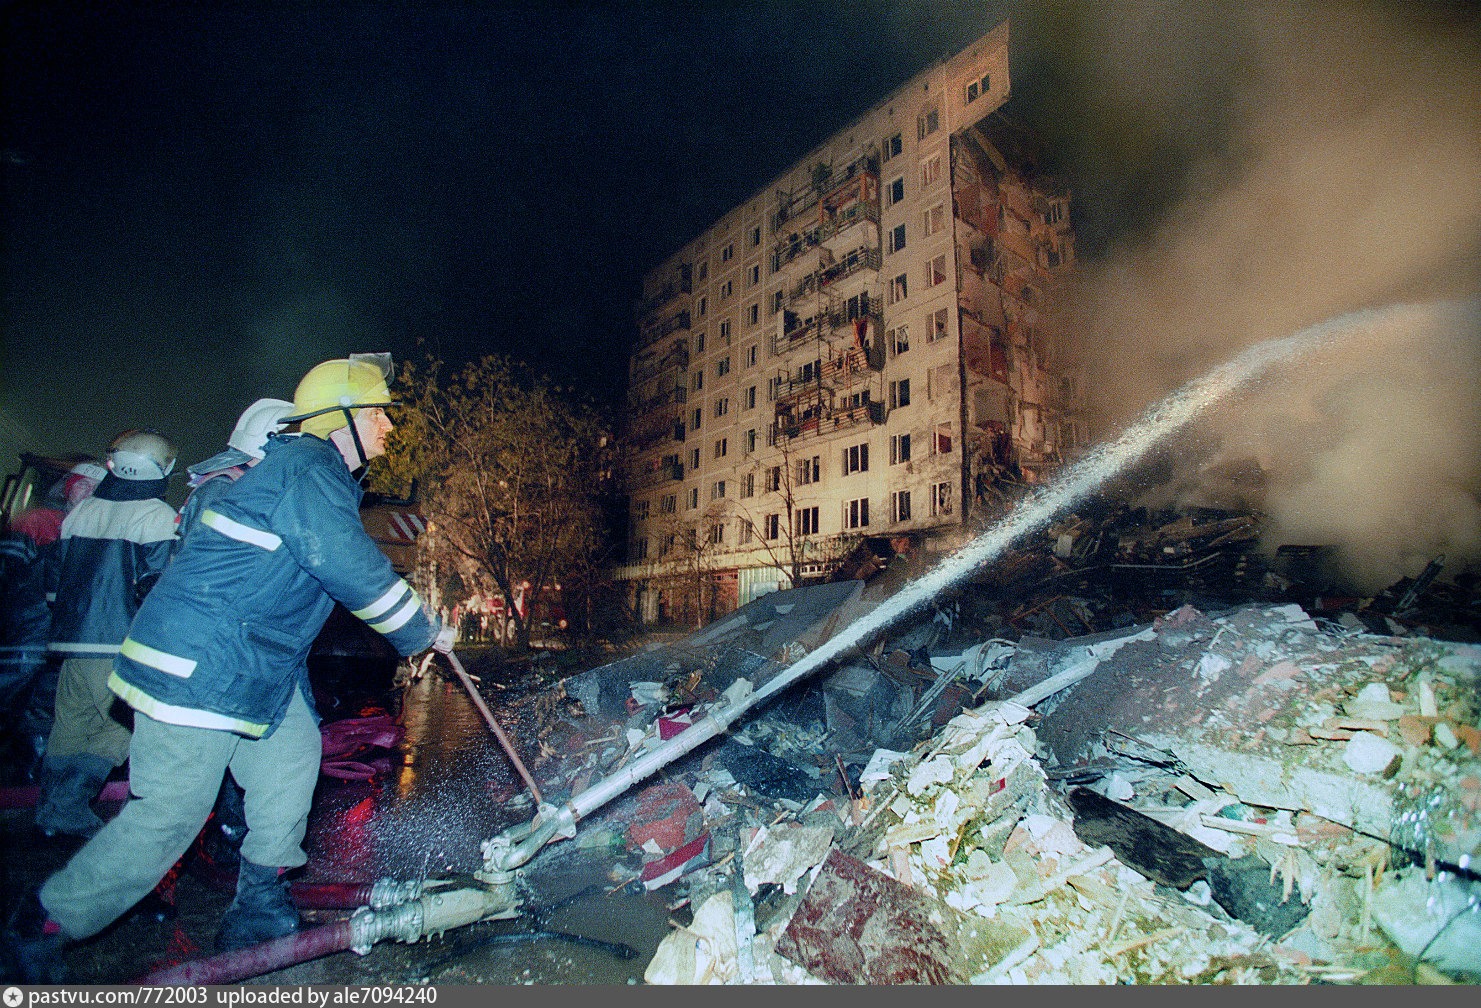 Взорвали дома в москве каком году. Теракт на улице Гурьянова 1999. Взрыв дома на Гурьянова 1999. Взрывы на каширке и Гурьянова 1999. Улица Гурьянова 1999.